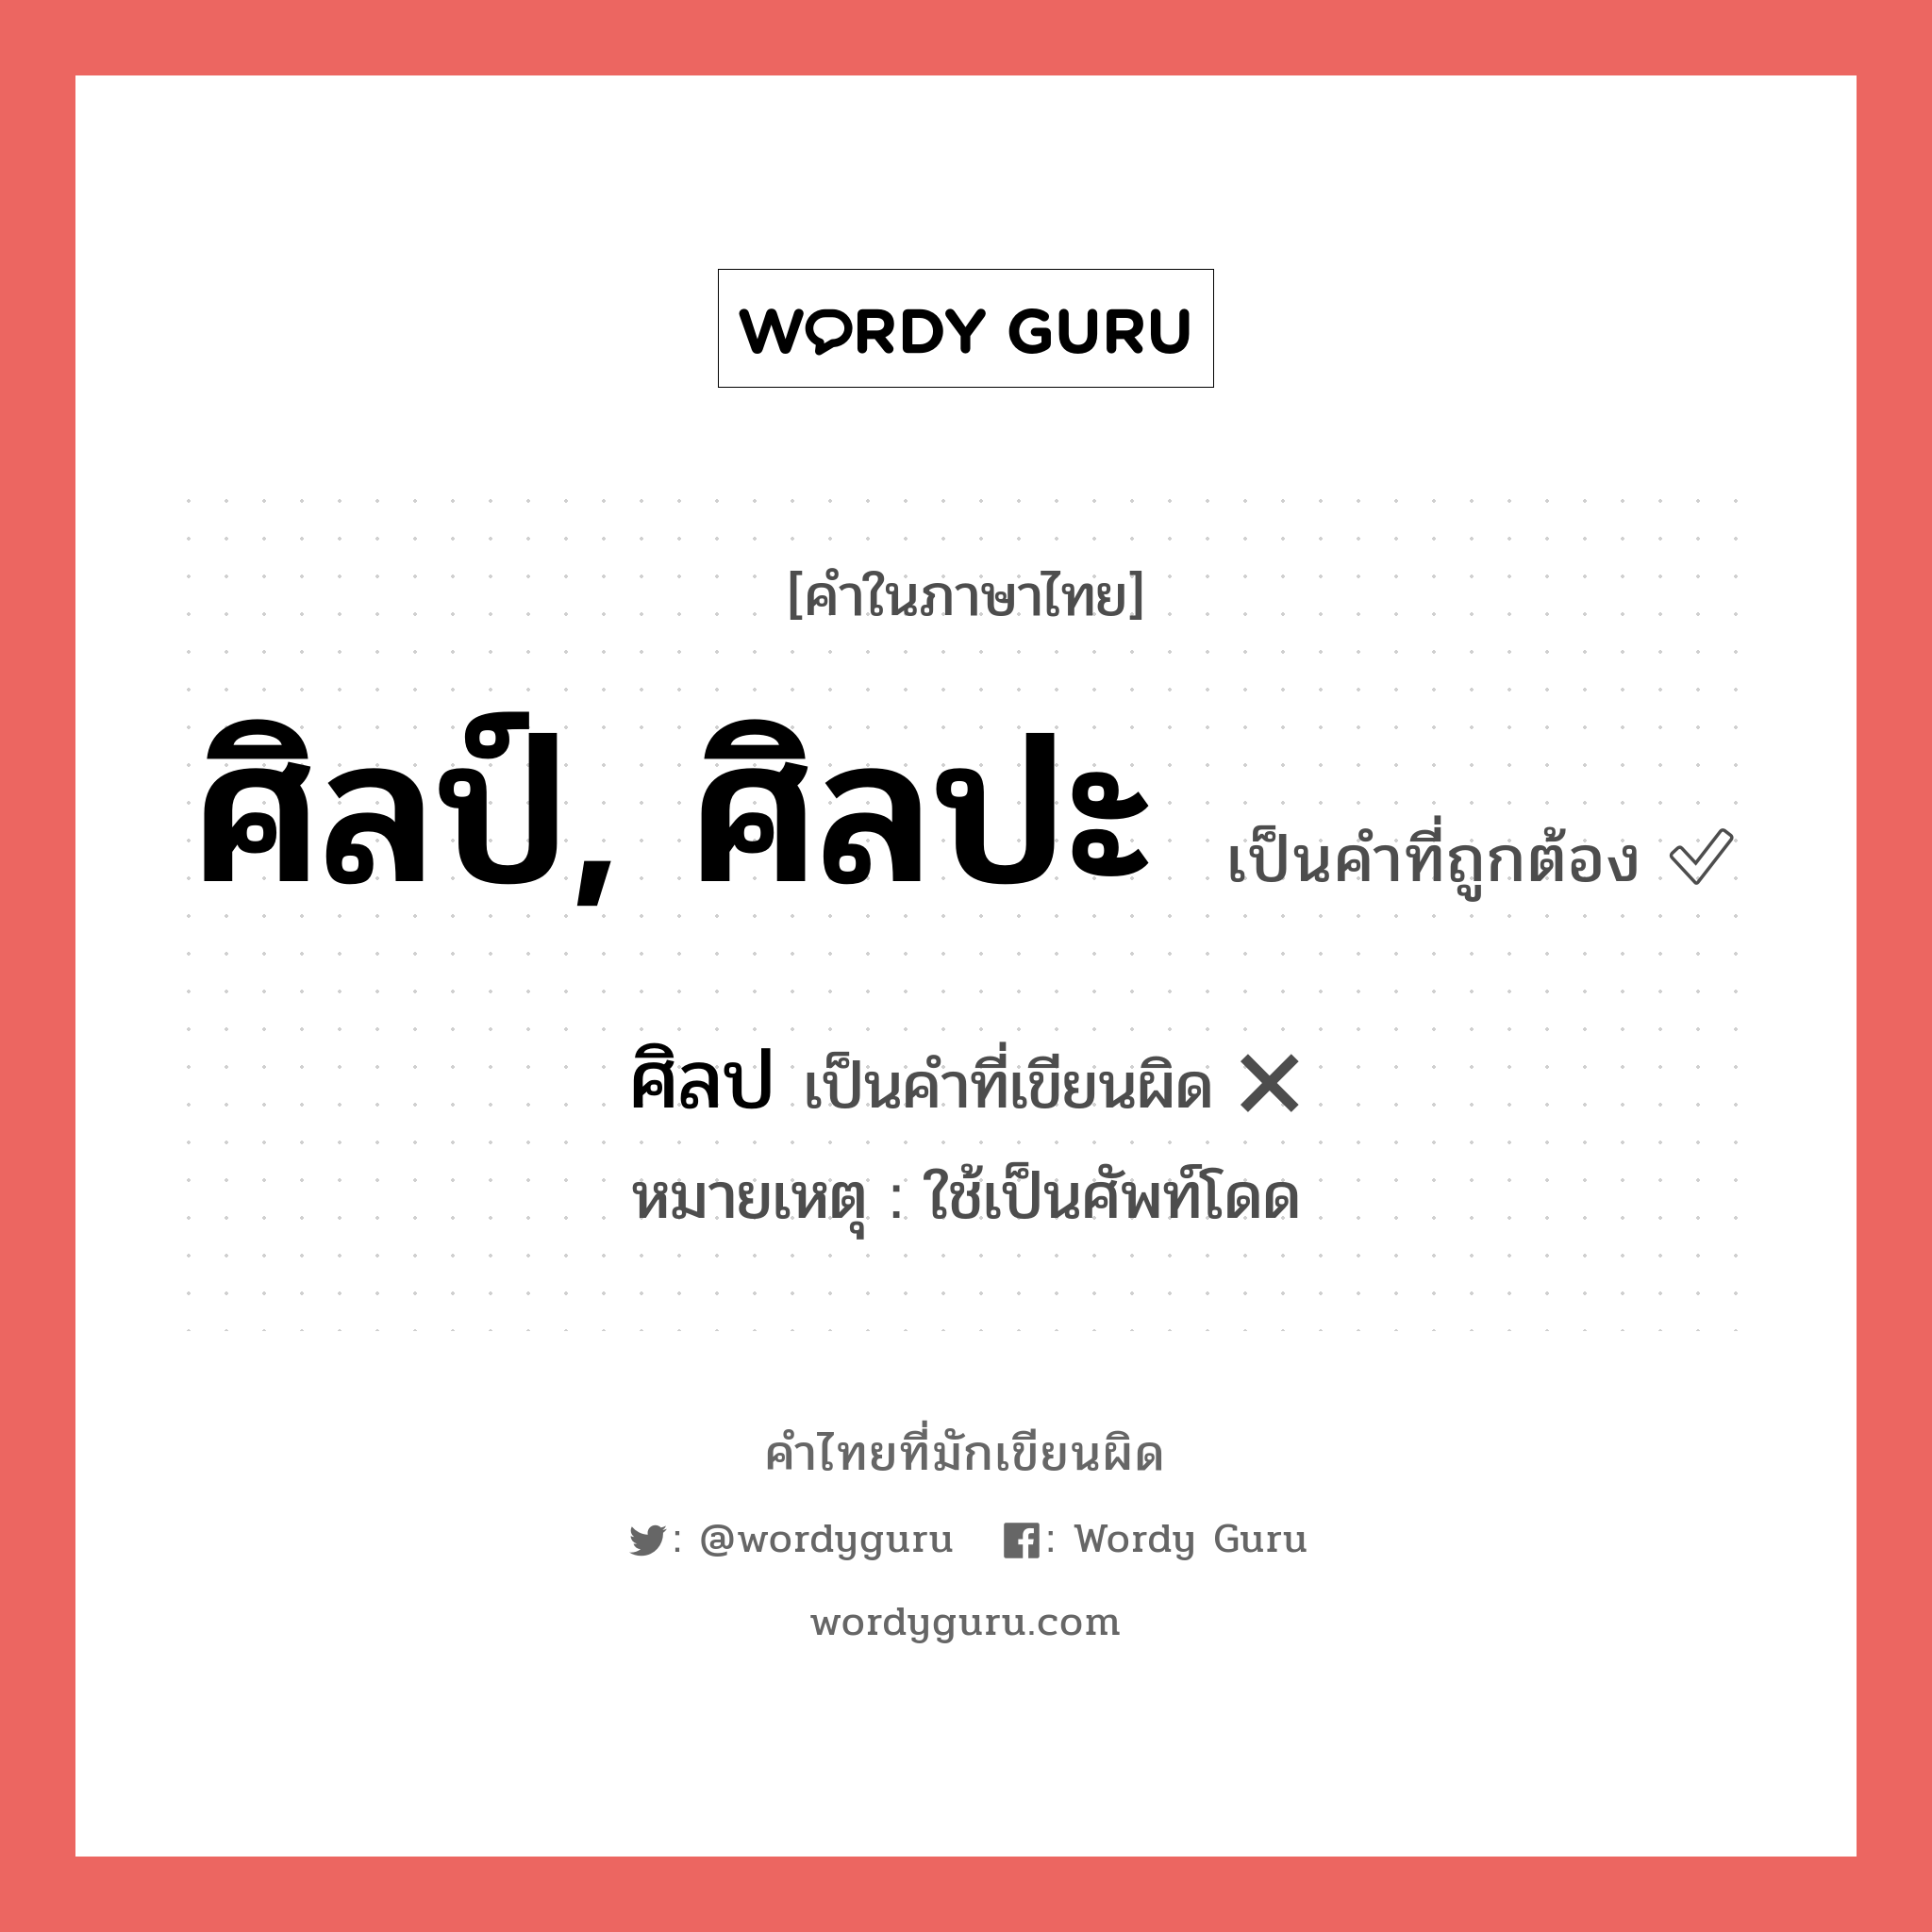 ศิลป์, ศิลปะ หรือ ศิลป คำไหนเขียนถูก?, คำในภาษาไทยที่มักเขียนผิด ศิลป์, ศิลปะ คำที่ผิด ❌ ศิลป หมายเหตุ ใช้เป็นศัพท์โดด